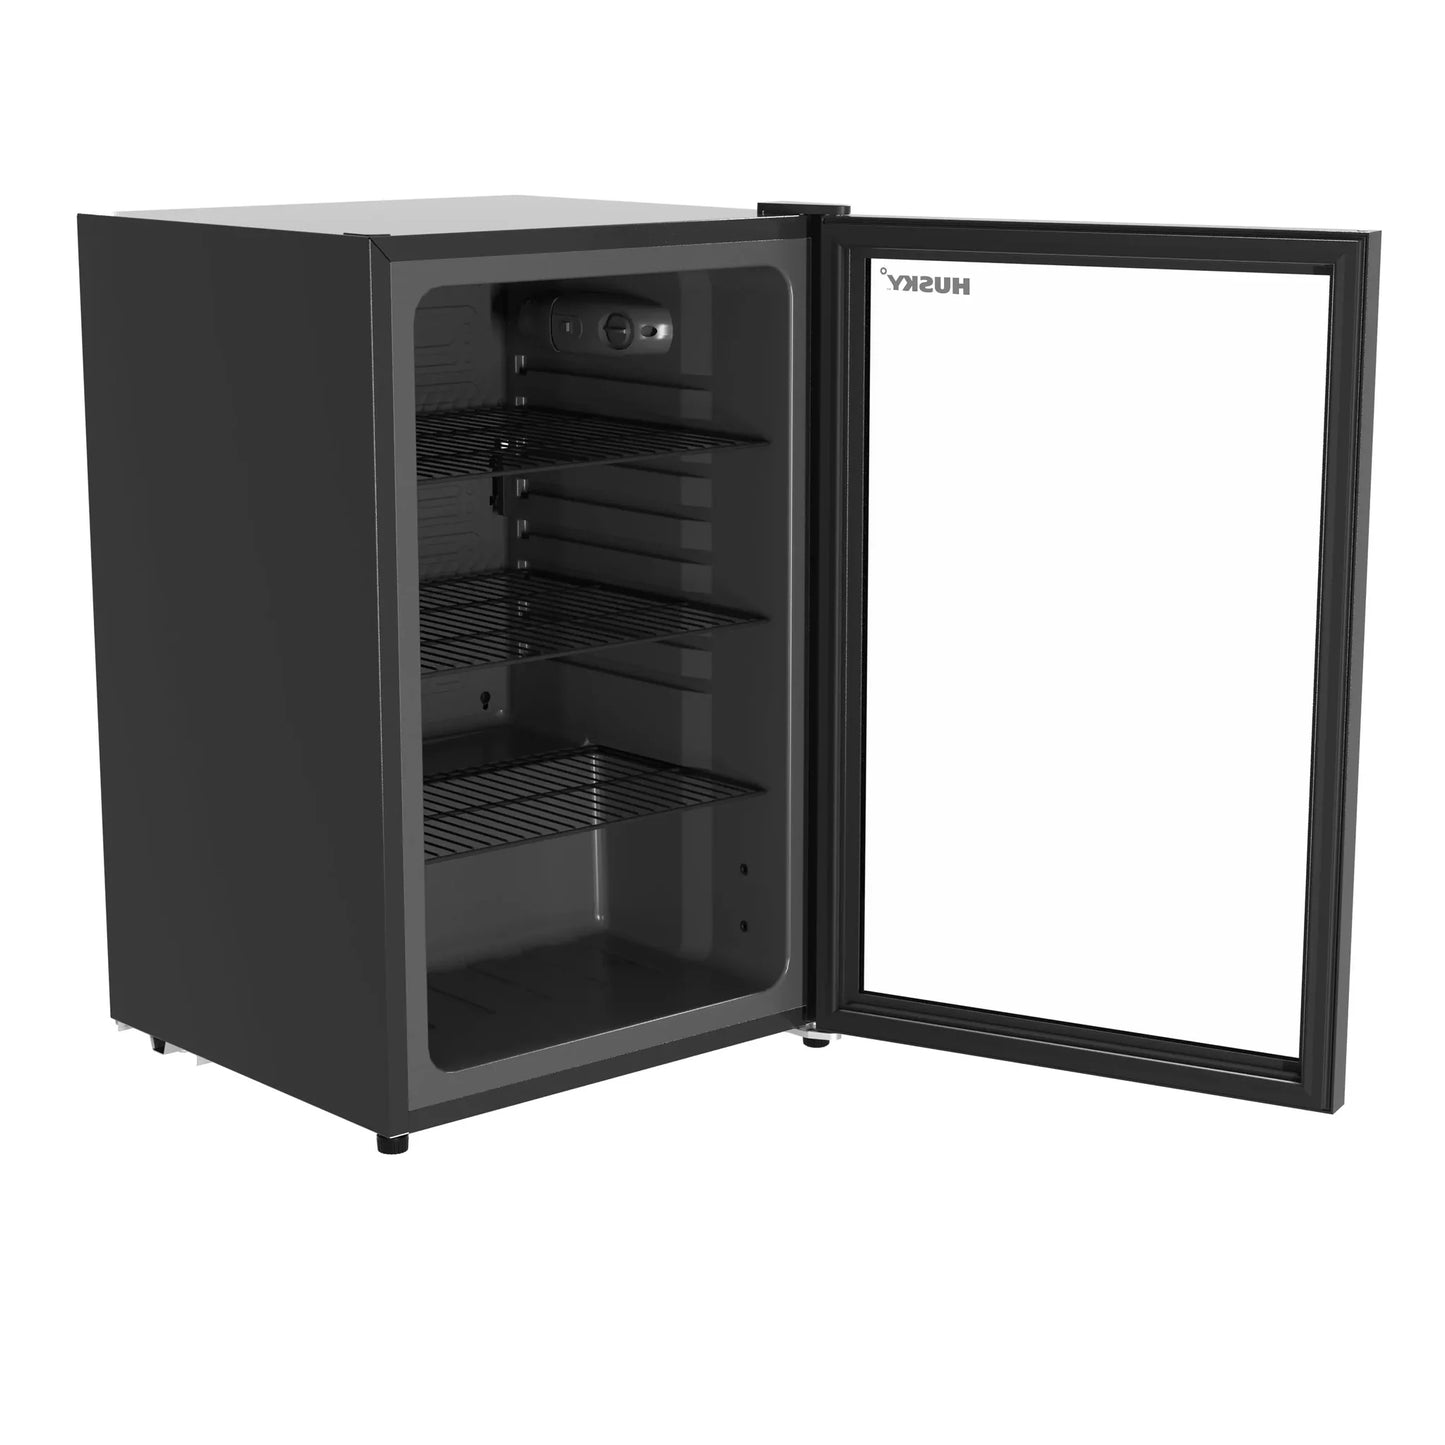 Husky 131L Beverage Refrigerator 4.6 C.ft. Freestanding Mini Fridge With Glass Door in Black